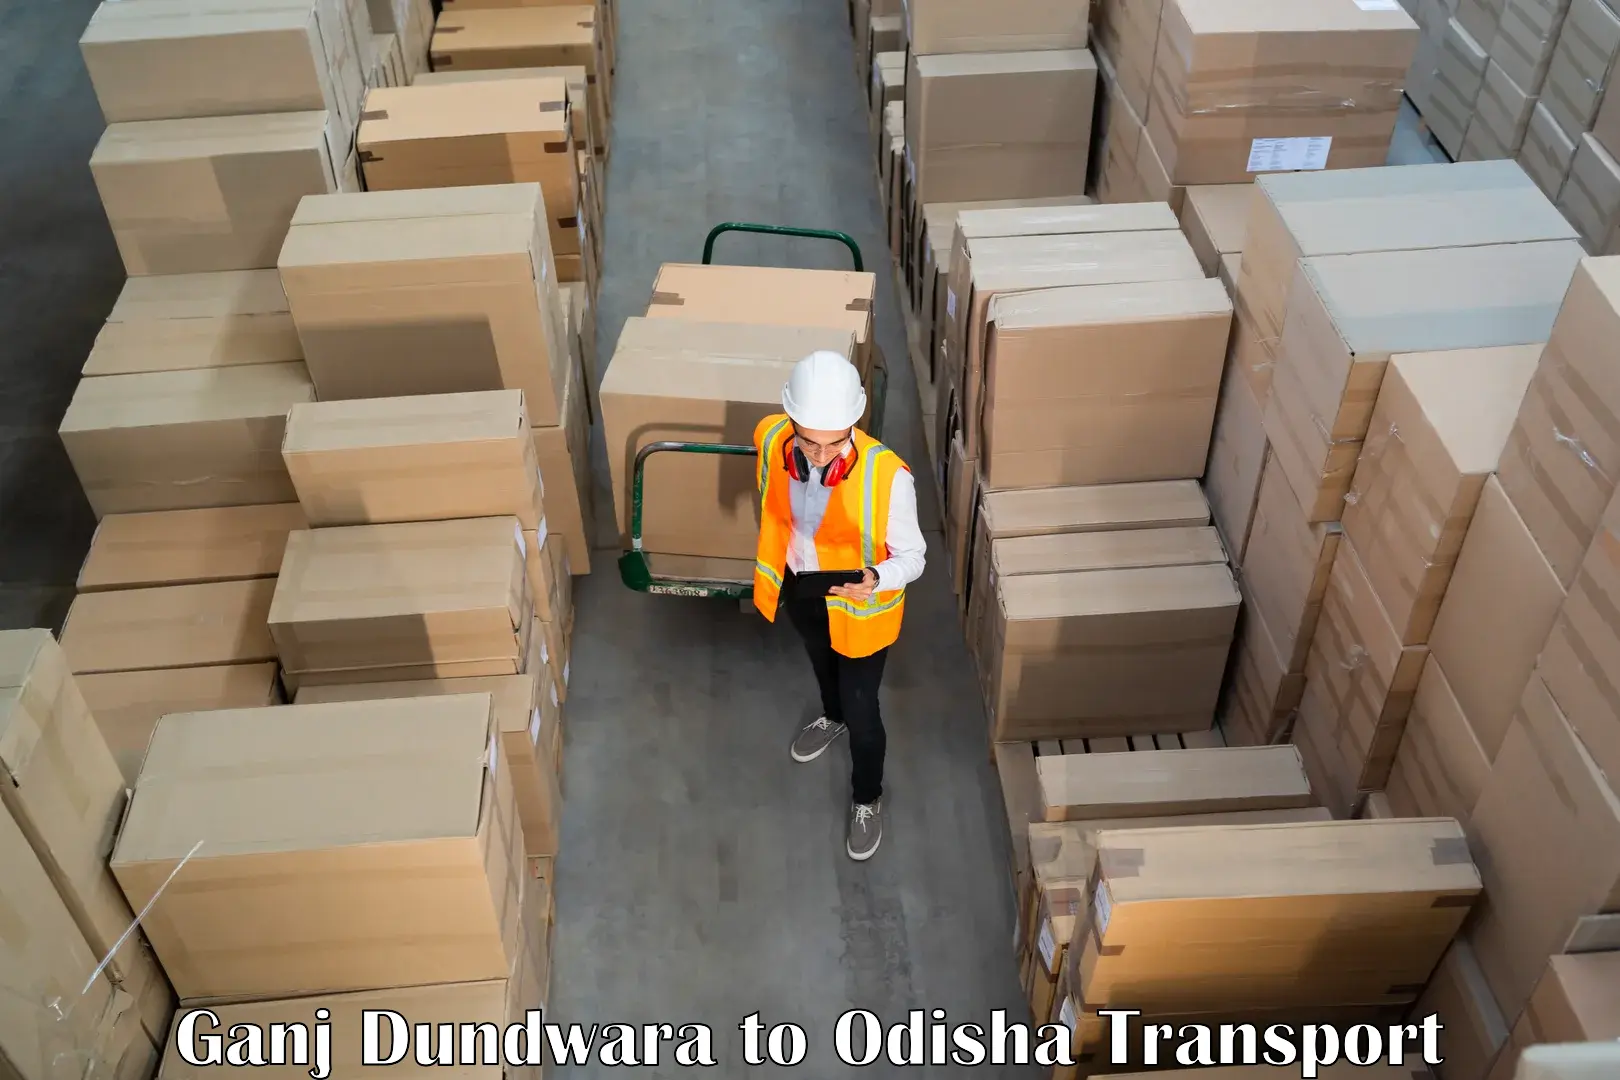 Truck transport companies in India Ganj Dundwara to Ghatgaon